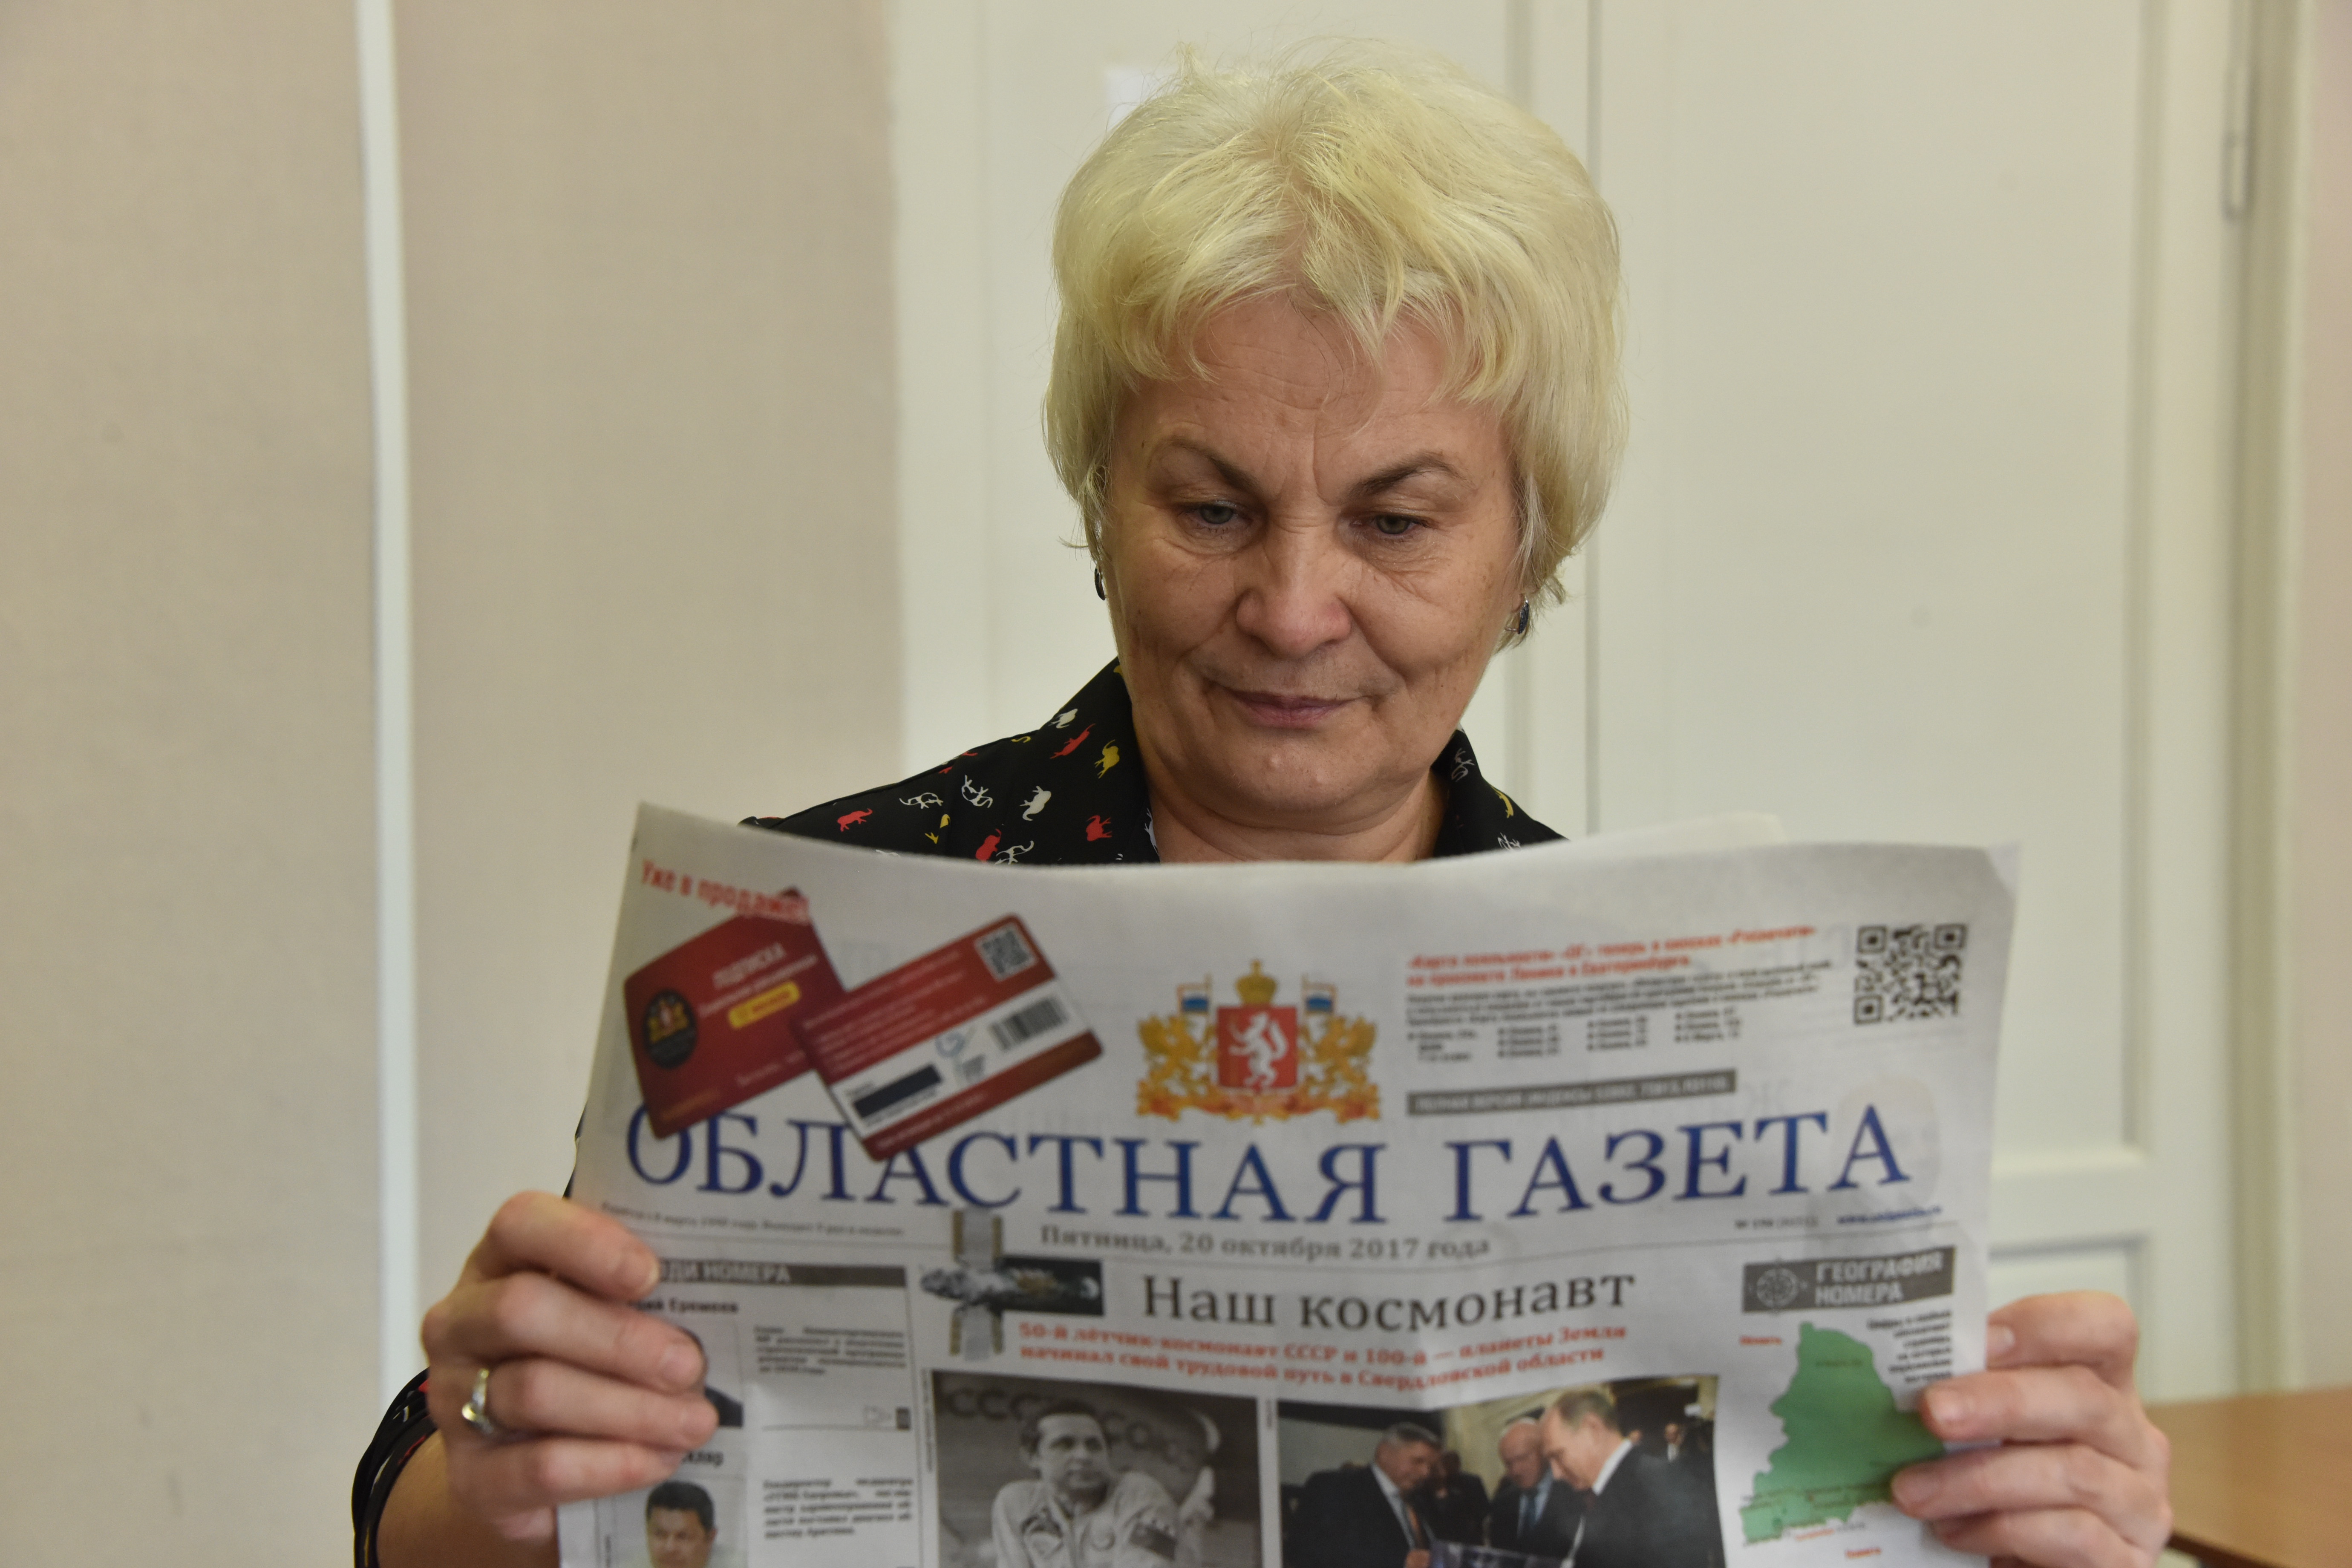 Подписаться на "Областную газету" можно в редакции и на почте